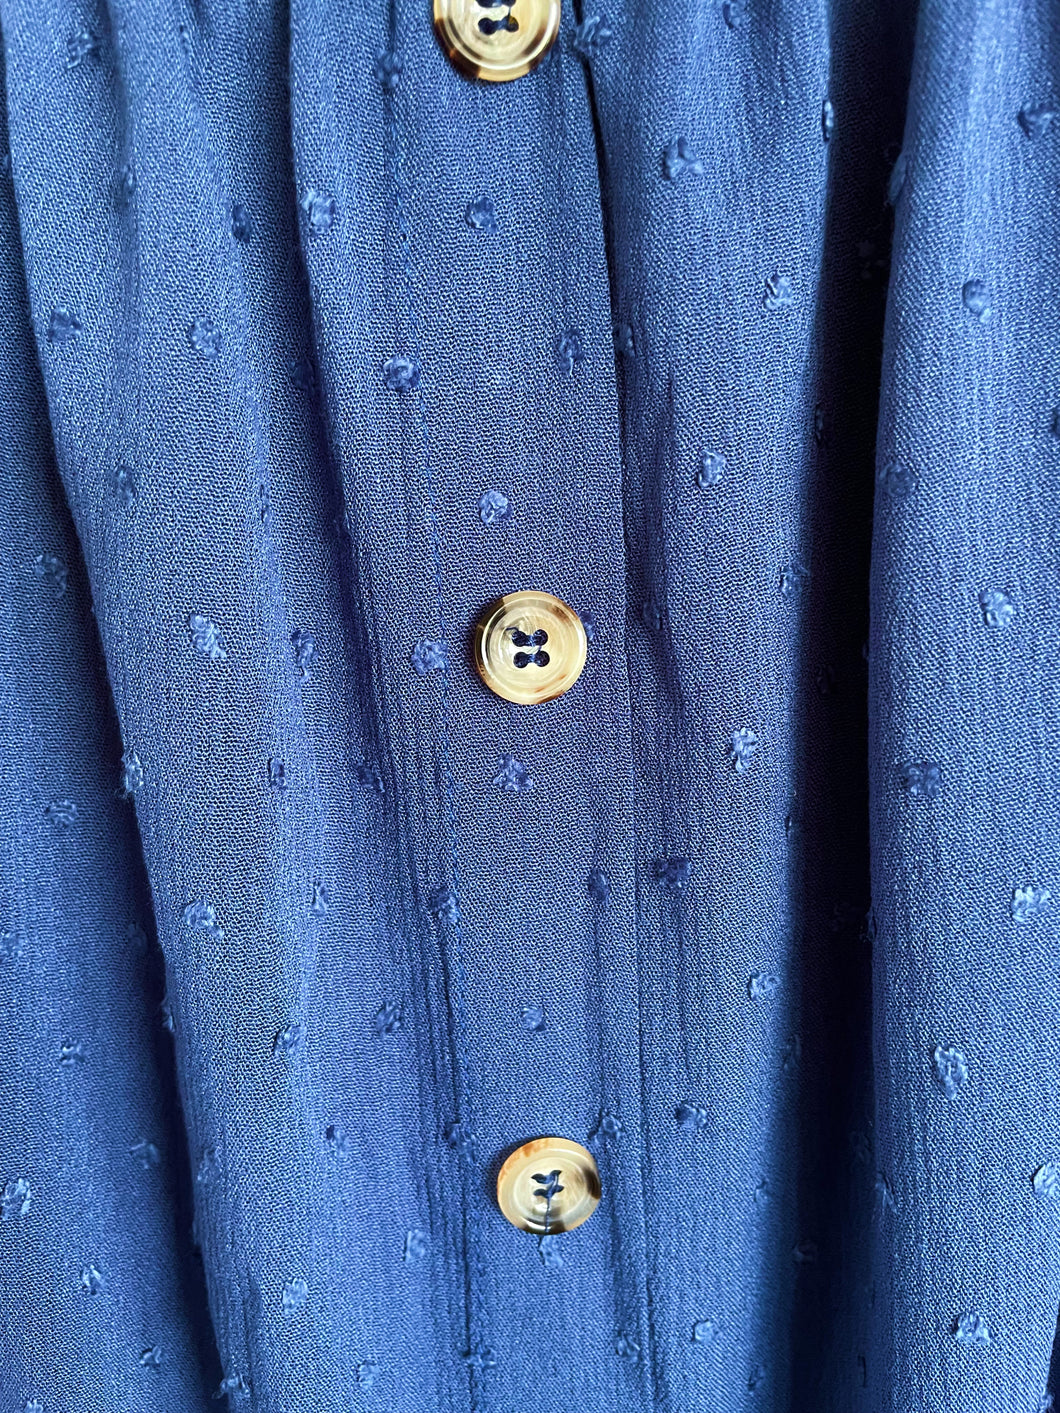 Blauwe Top Dobby heeft een kort mouwtje met een strikje, wat een leuk detail is. De top heeft een ronde hals, een rij knoopjes en heeft aan de onderzijde een elastische band met ruffles. Top kan zowel op de schouder als off-shoulder gedragen worden en is verkrijgbaar in verschillende kleuren.  Kleur : Blauw, Geel, Wit